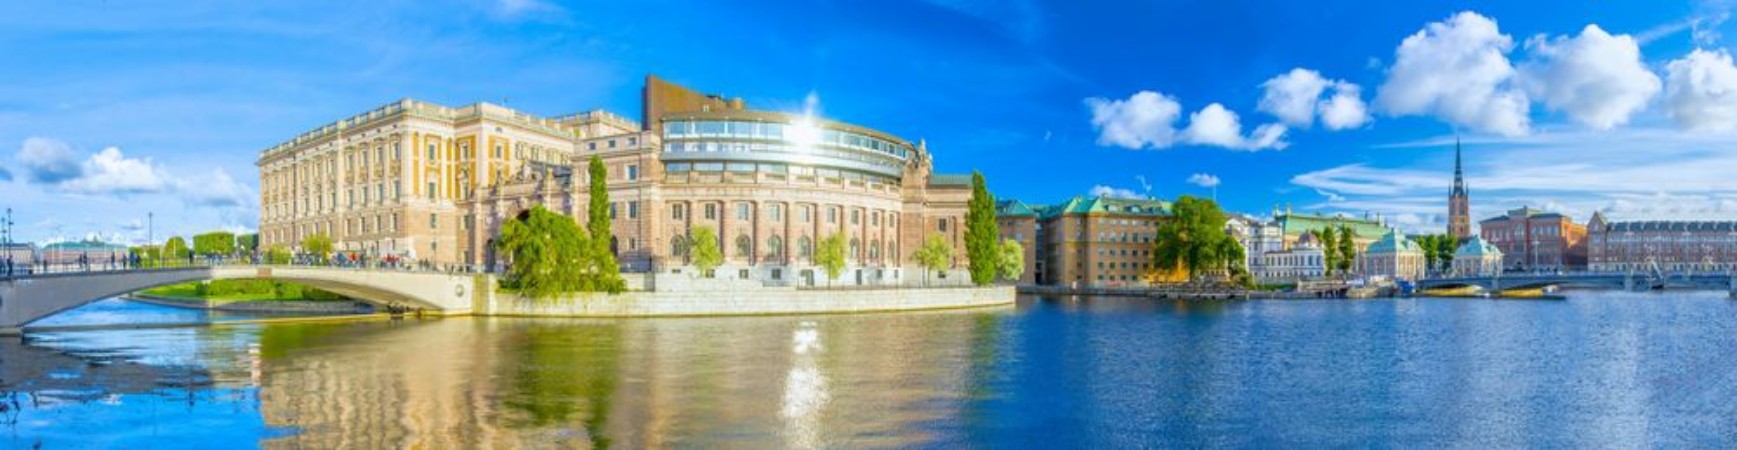 Image de Parlement de Stockholm Sude